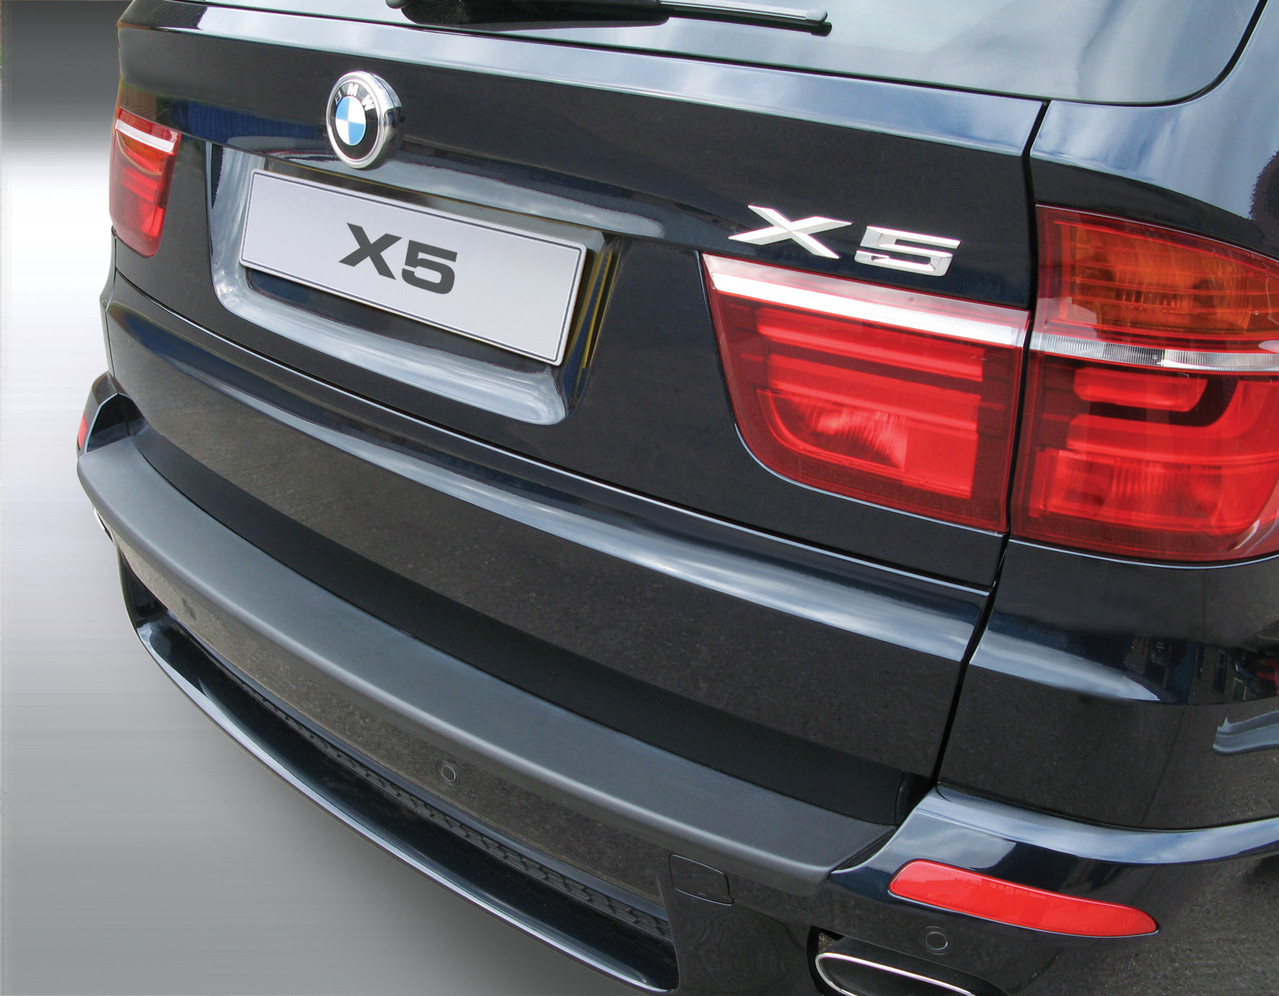 Ladekantenschutz für BMW X5 - die Schutz Fahrzeuges für Ladekante Ihres